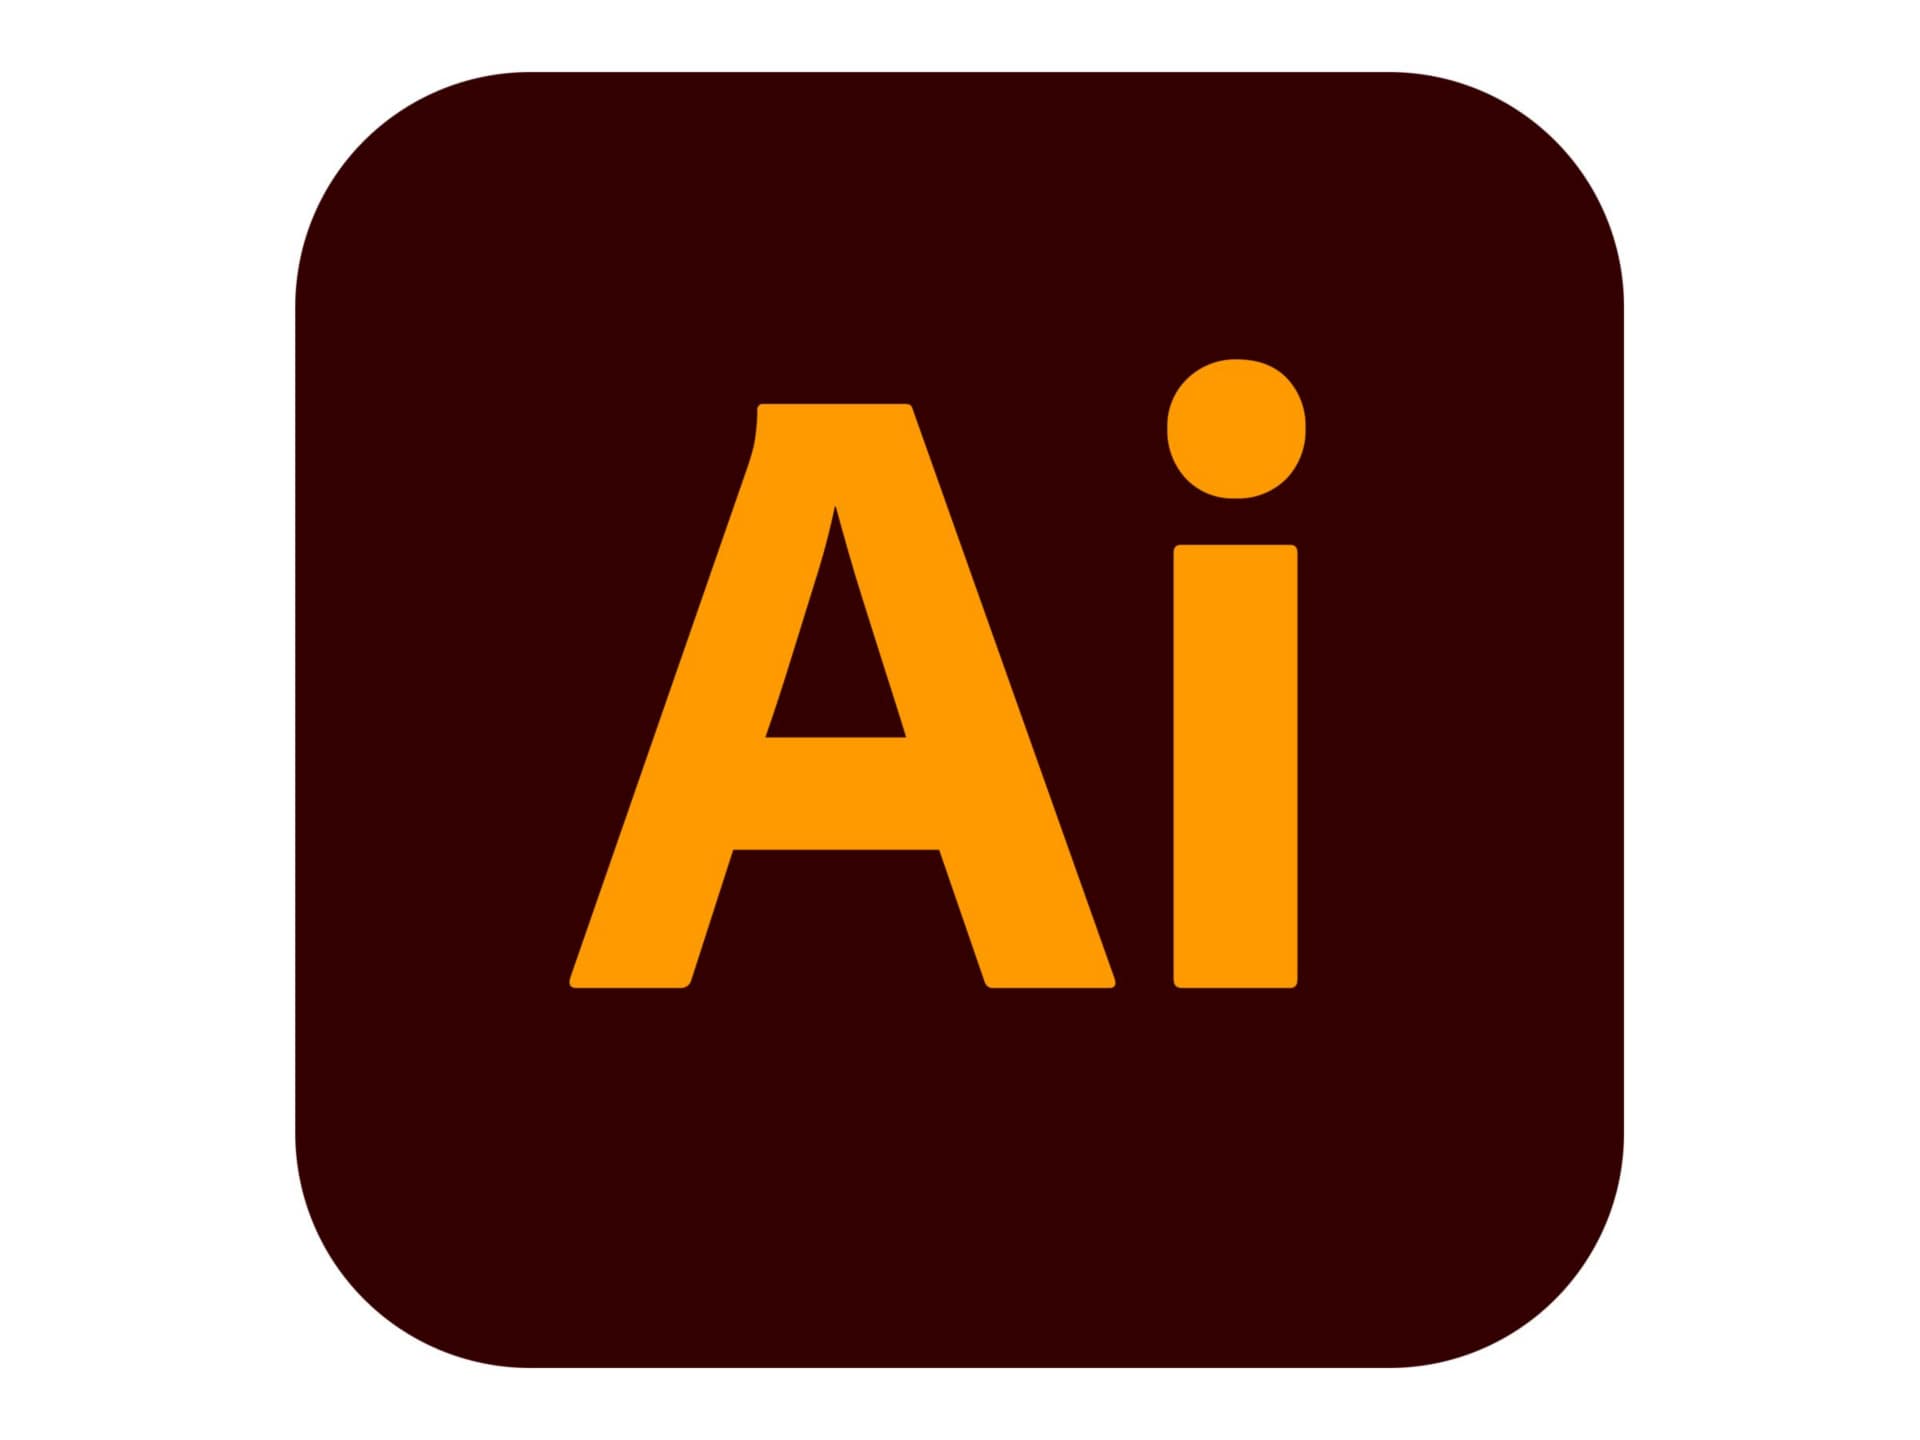 Adobe Illustrator CC for Enterprise - Subscription New (10 months) - 1 named user